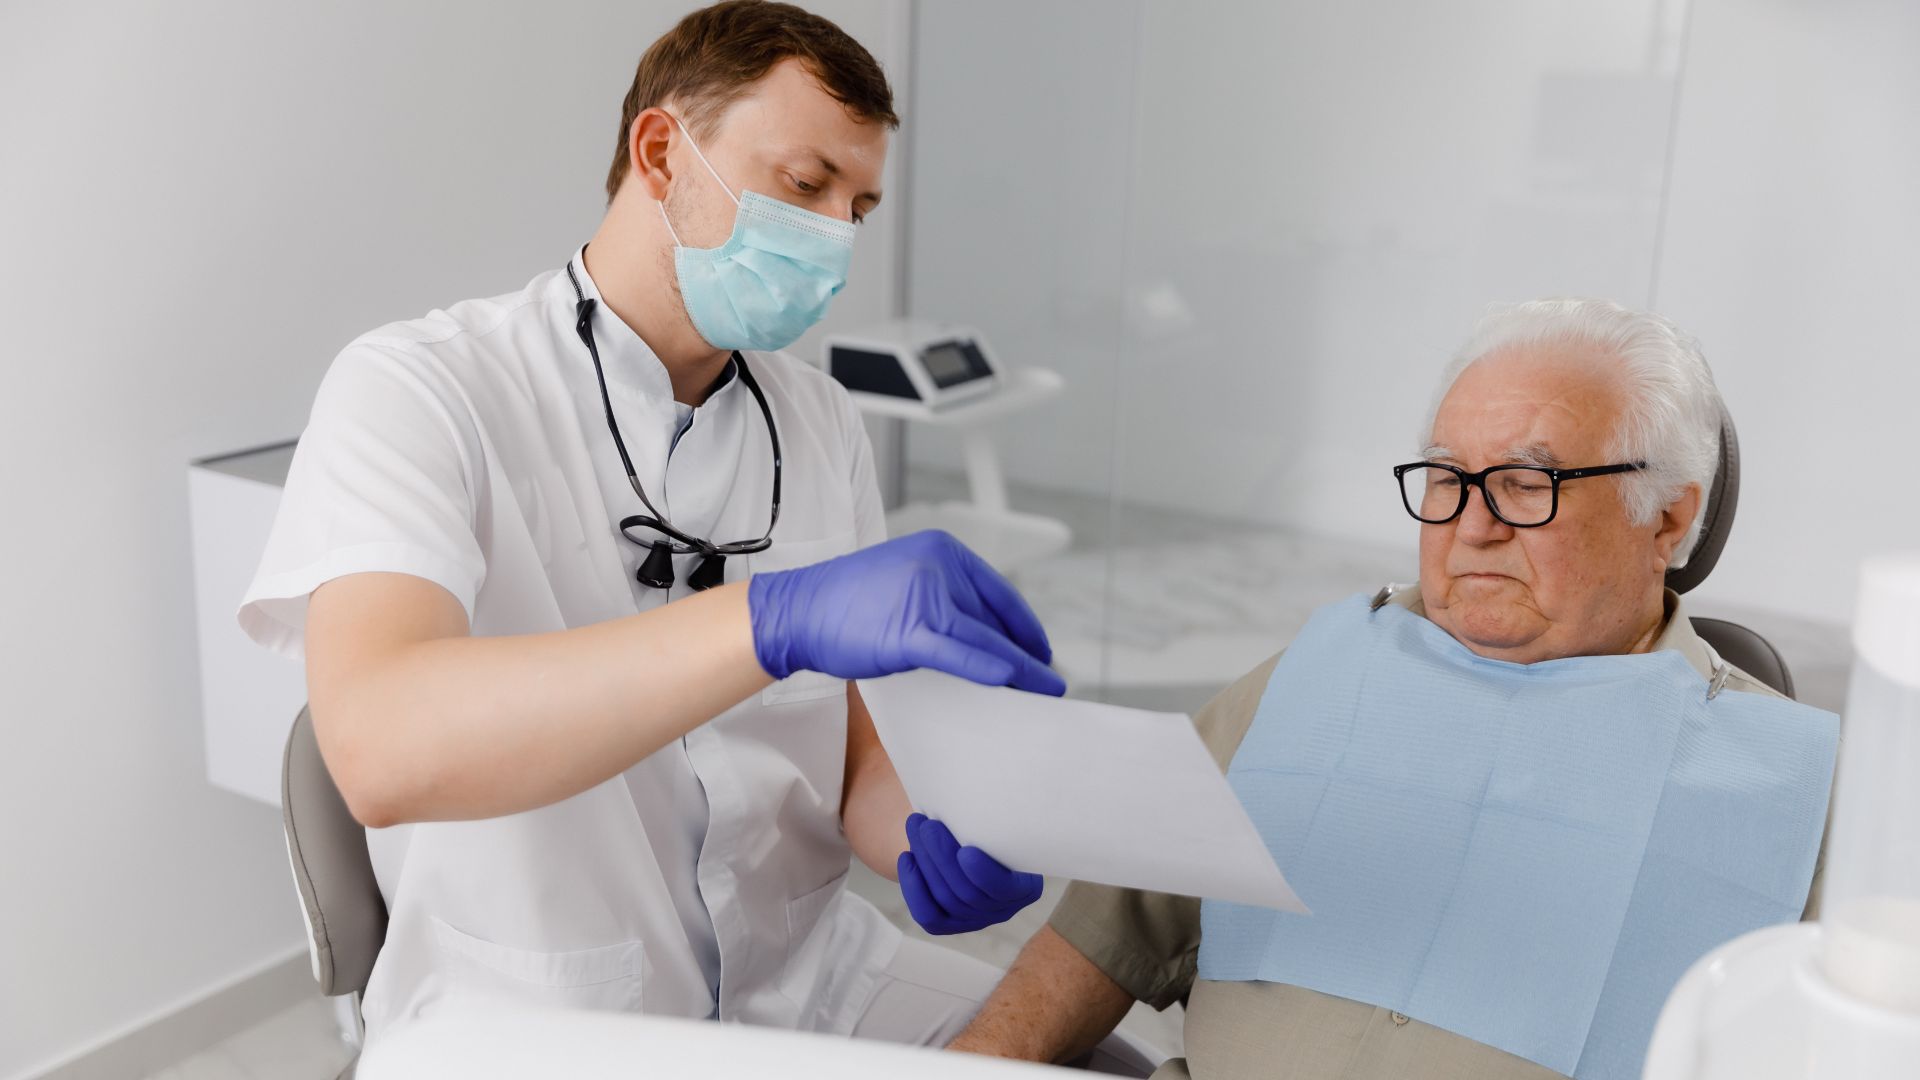 Fogorvos a fogorvosi székben ülő idős úrnak ad felvilágosítást